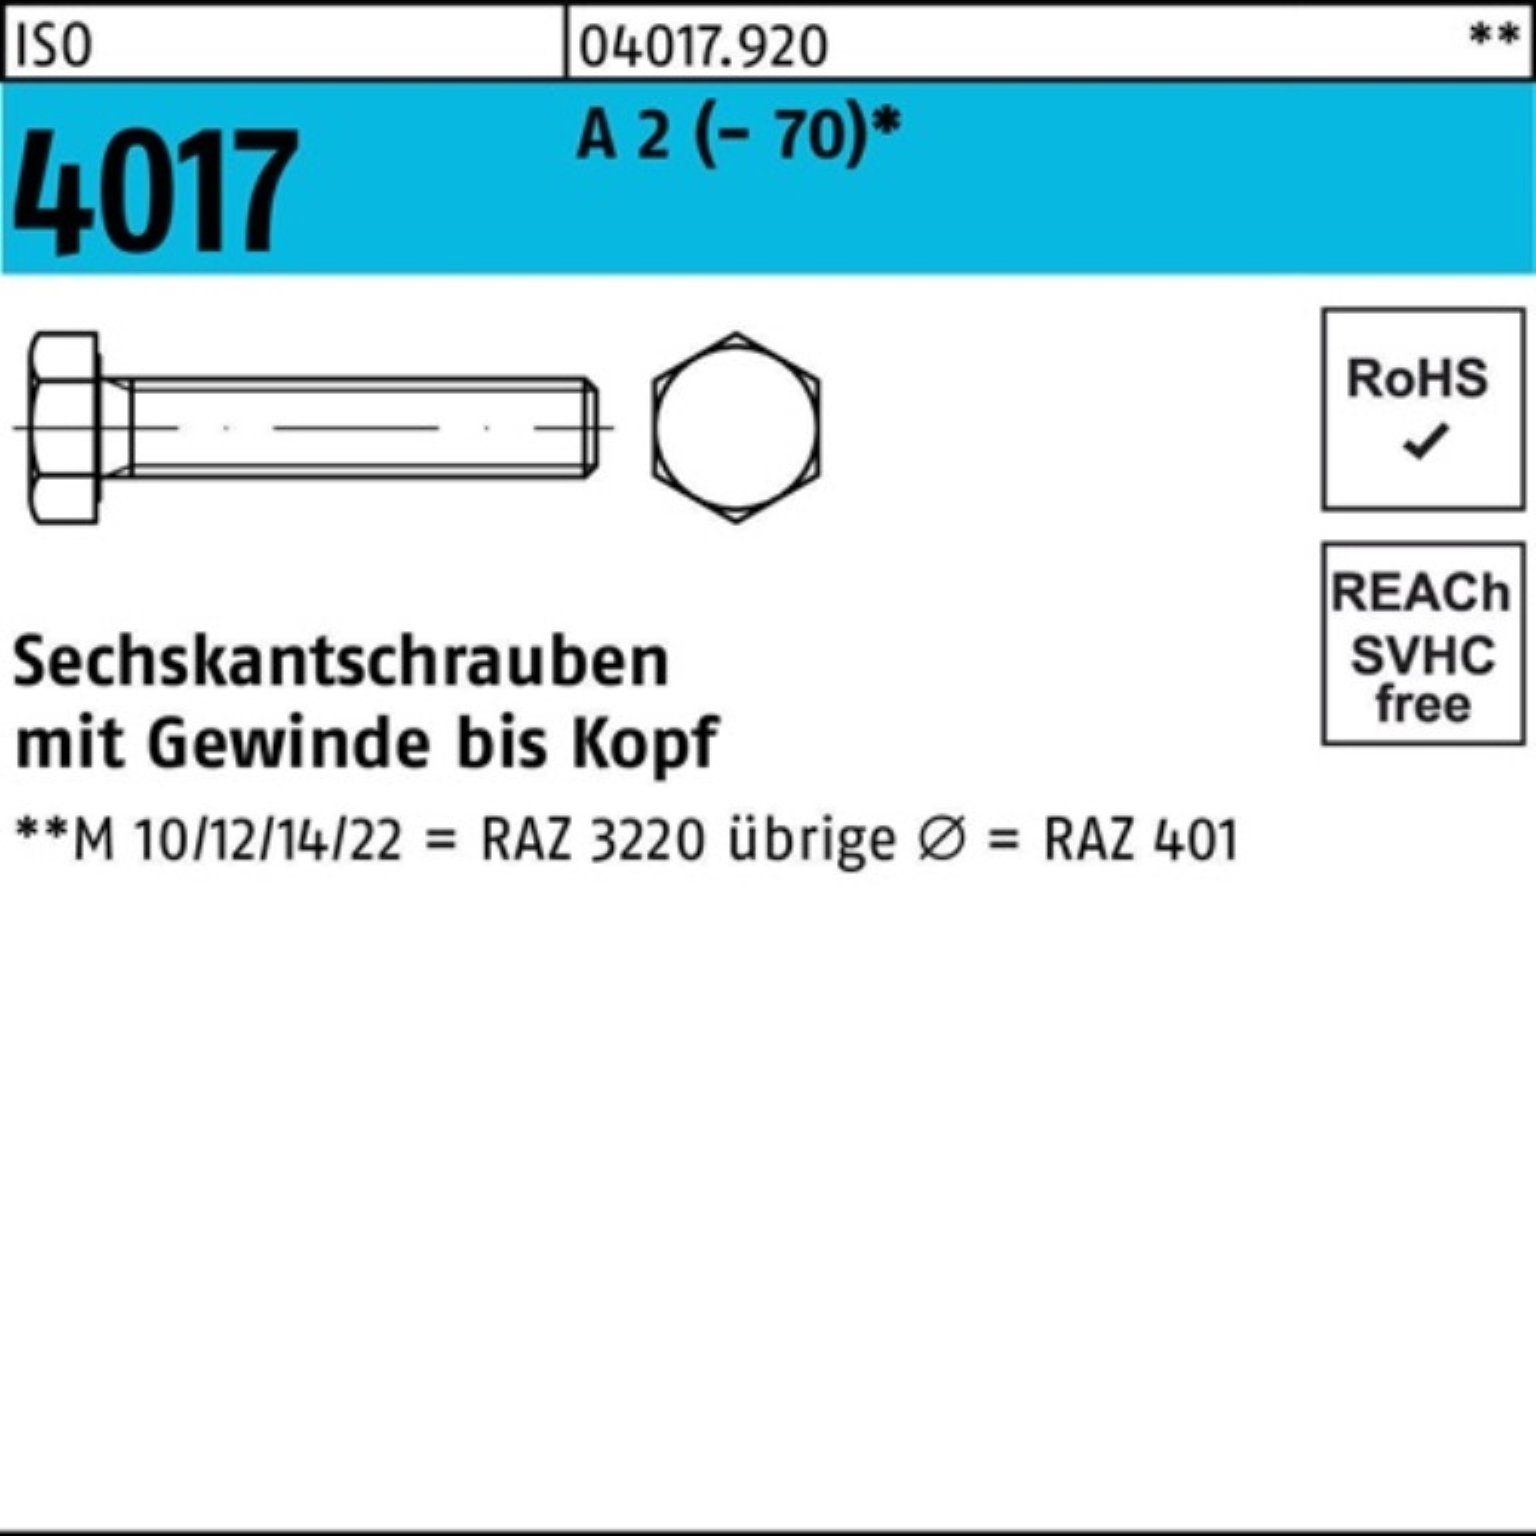 Pack VG (70) 90 A 25 4017 2 100er Stück M20x ISO Bufab Sechskantschraube Sechskantschraube